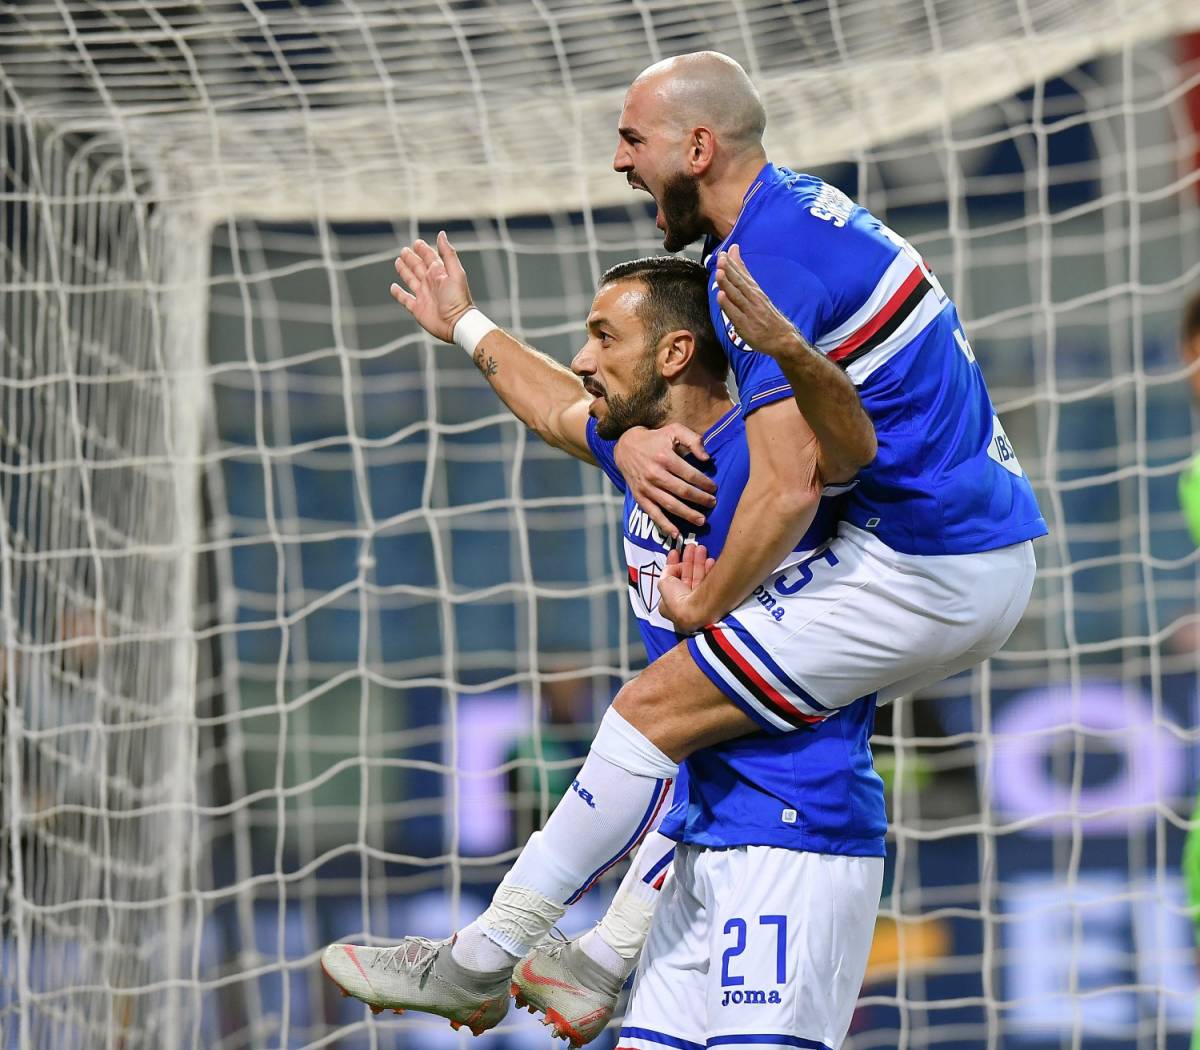 La Sampdoria batte 4-0 l'Udinese: doppietta e record per Quagliarella